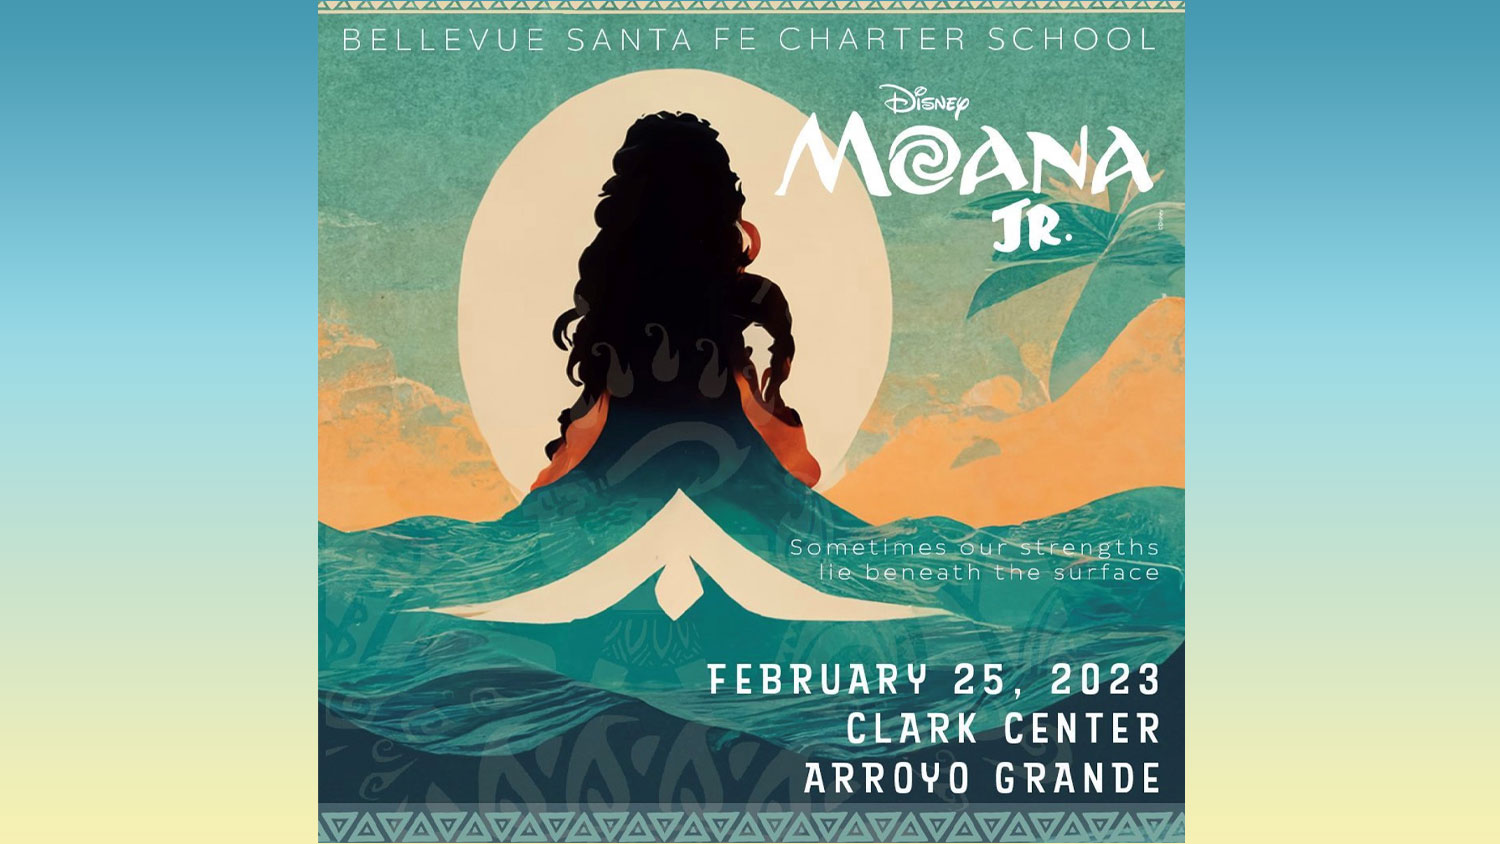 Bellevue Santa Fe Charter School presents Moana Jr.